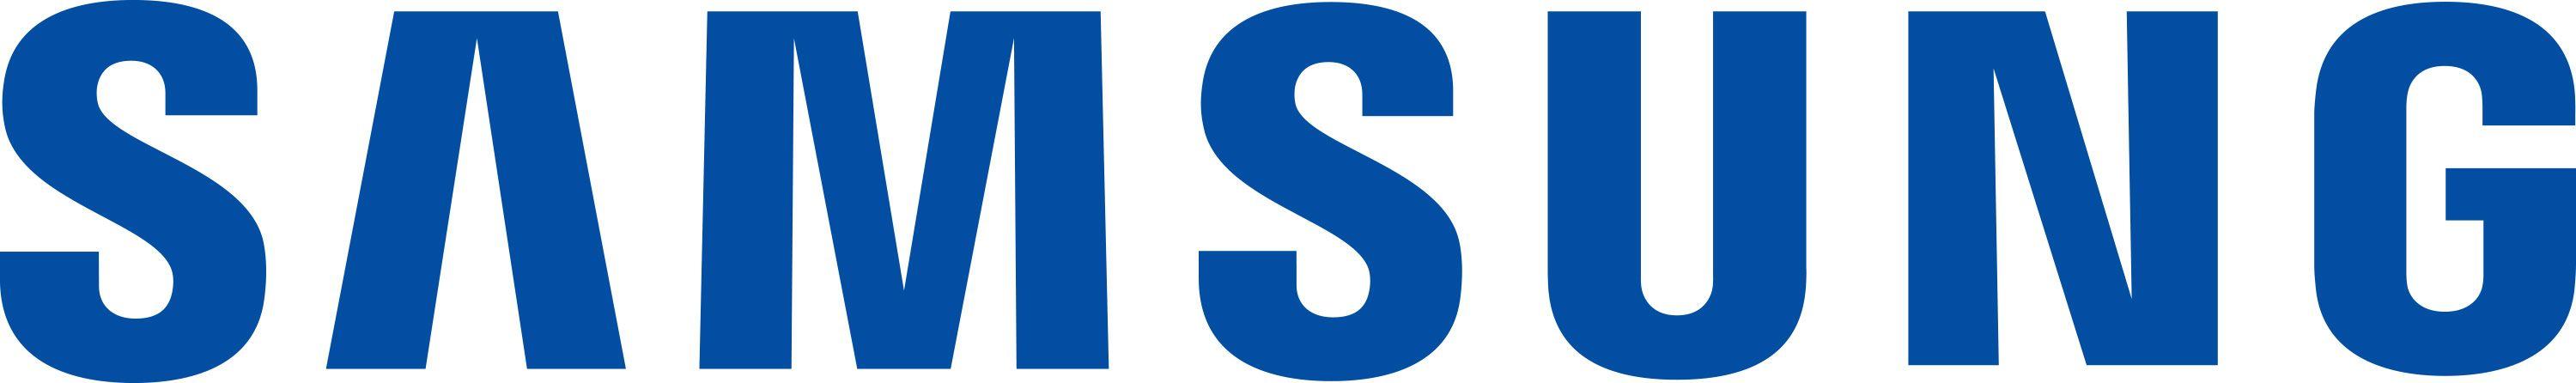 Samsung Electronics Logo - Samsung Electronics Logo